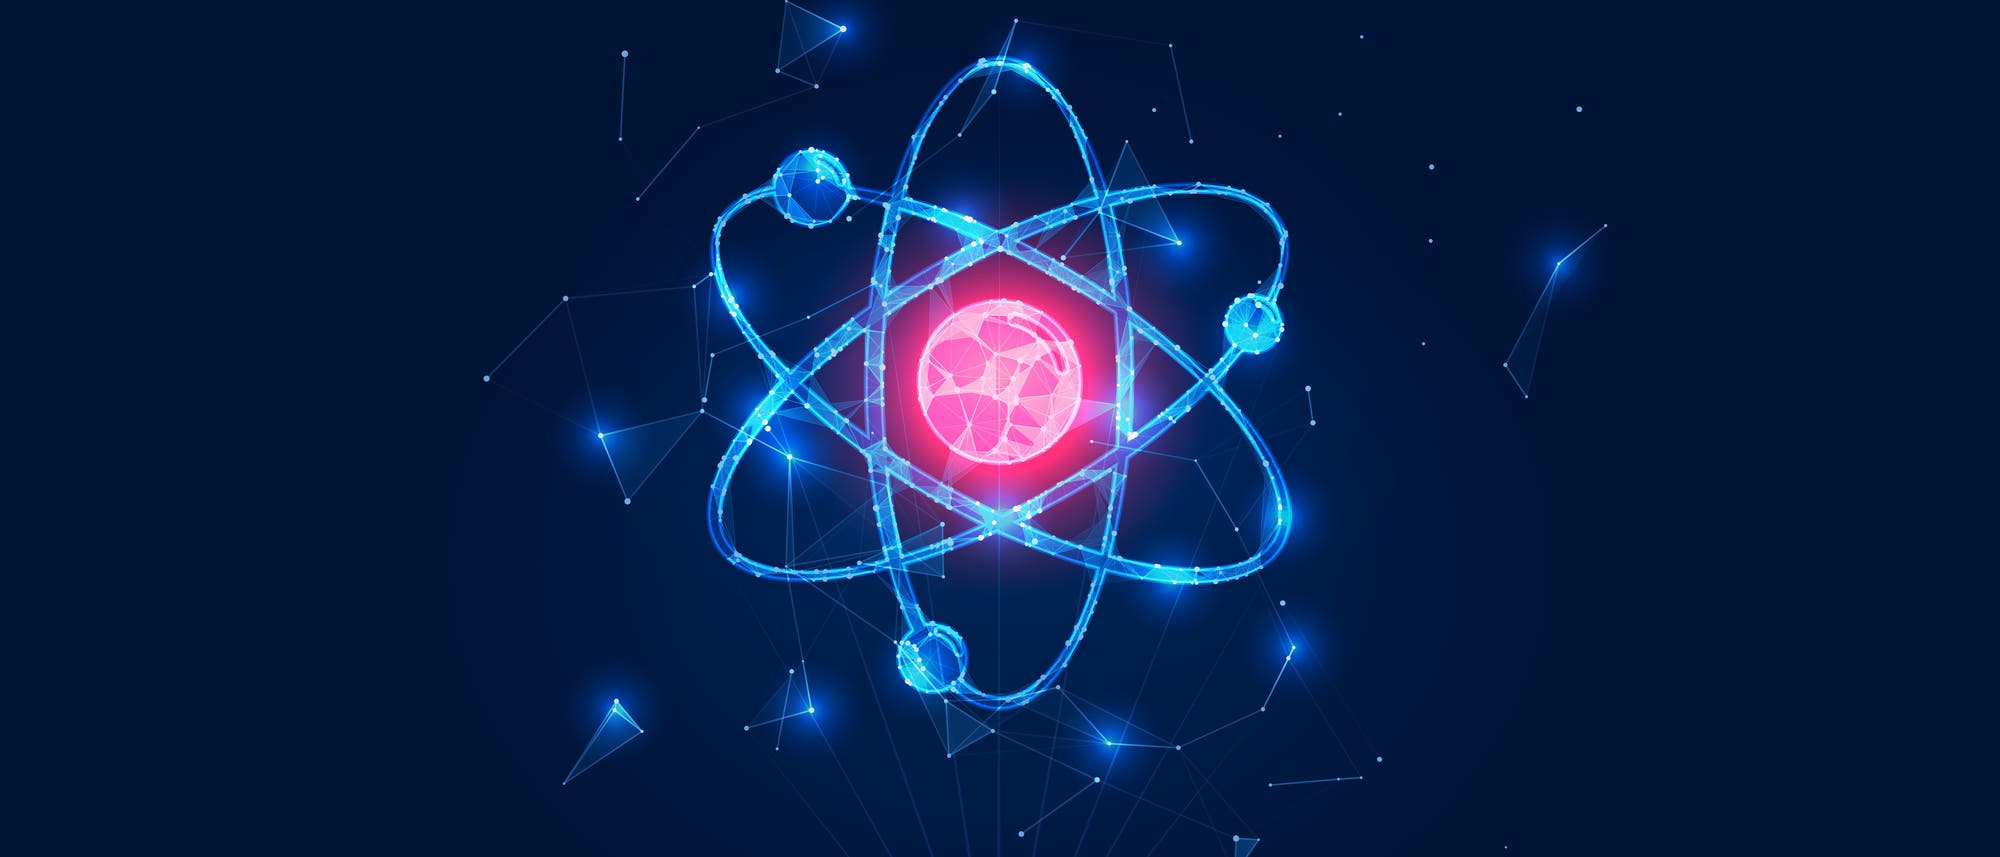 Eine stilisierte Darstellung eines Atoms, die tatsächlich in jeder nur denkbaren Hinsicht falsch ist.